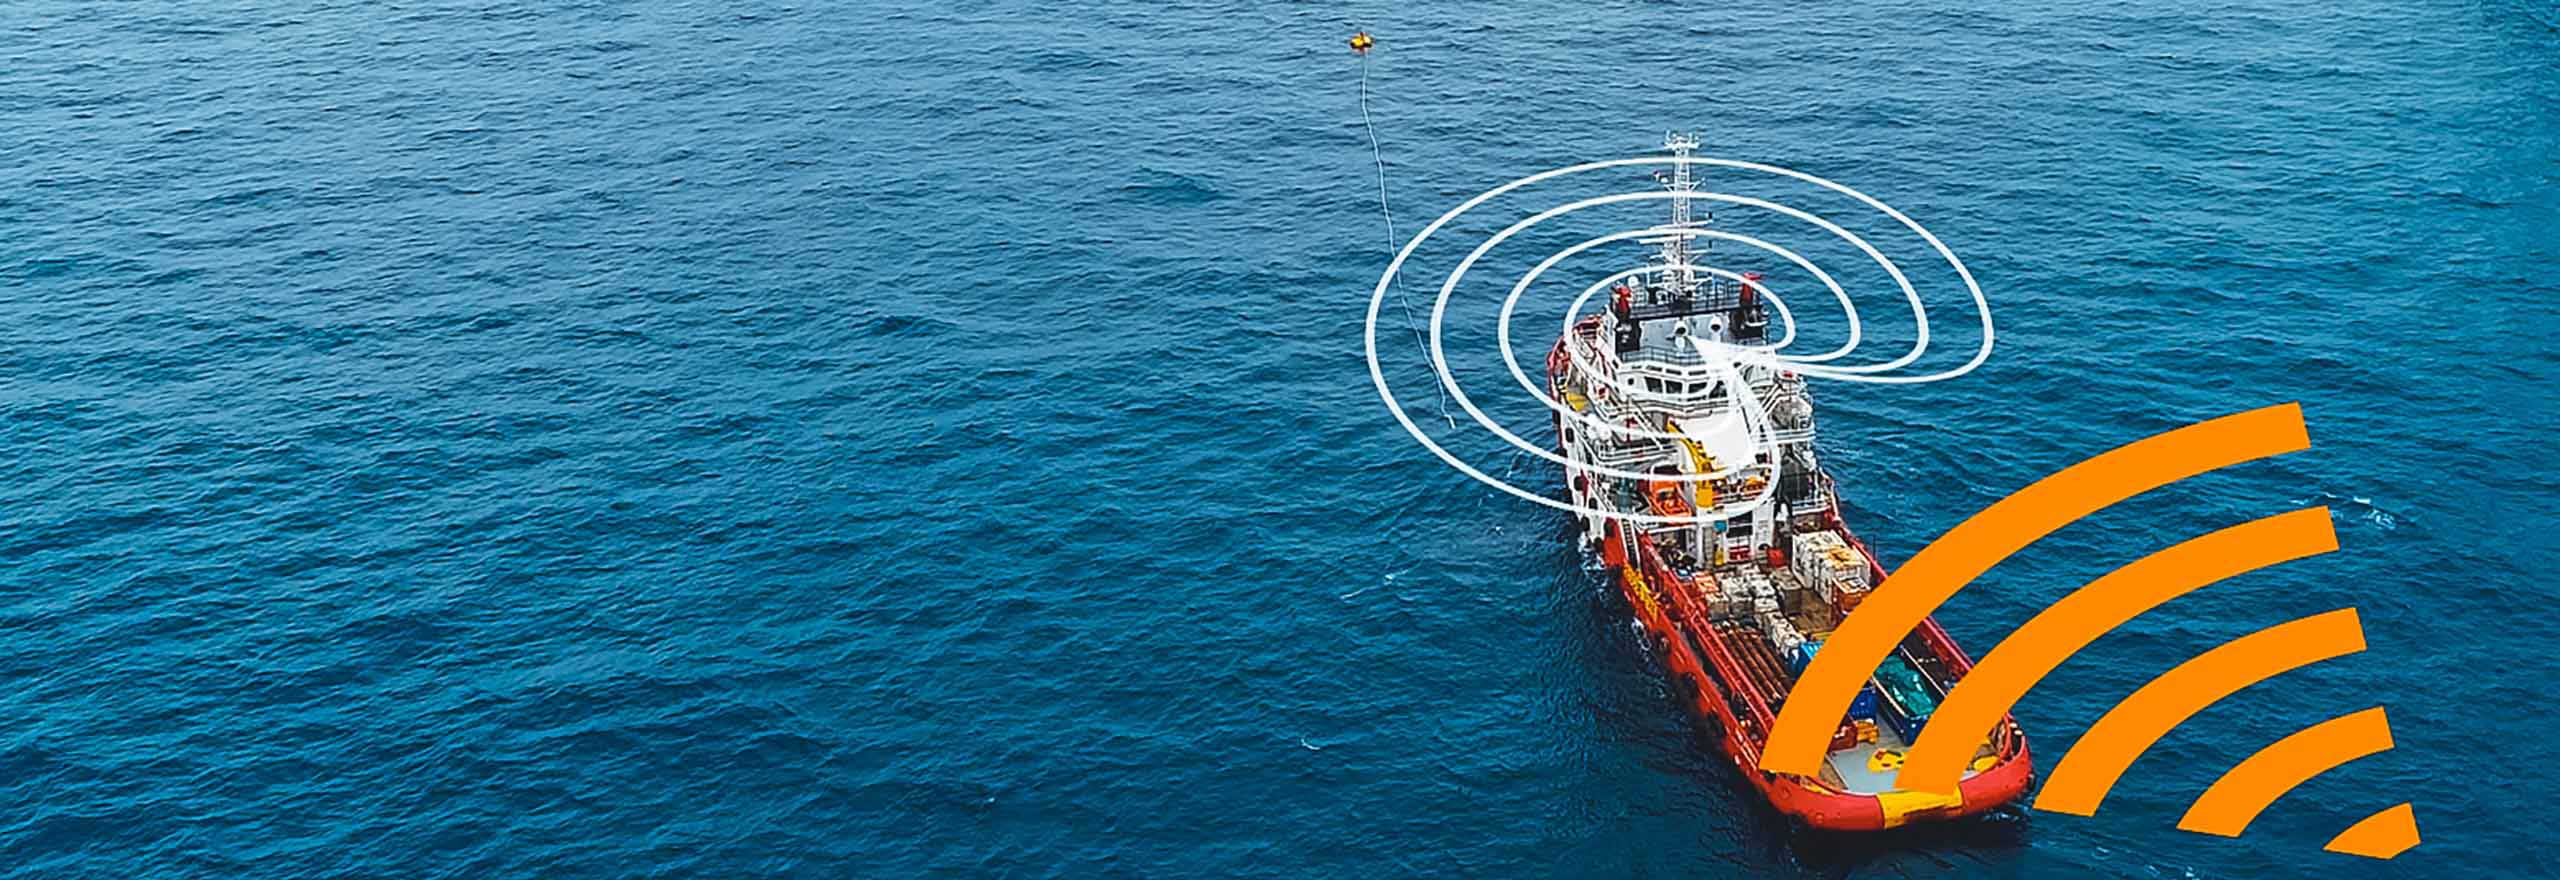 Como a tecnologia anti-interferência reage e reduz a obstrução em uma embarcação vermelha e branca no meio do oceano, perto de uma plataforma de petróleo offshore.